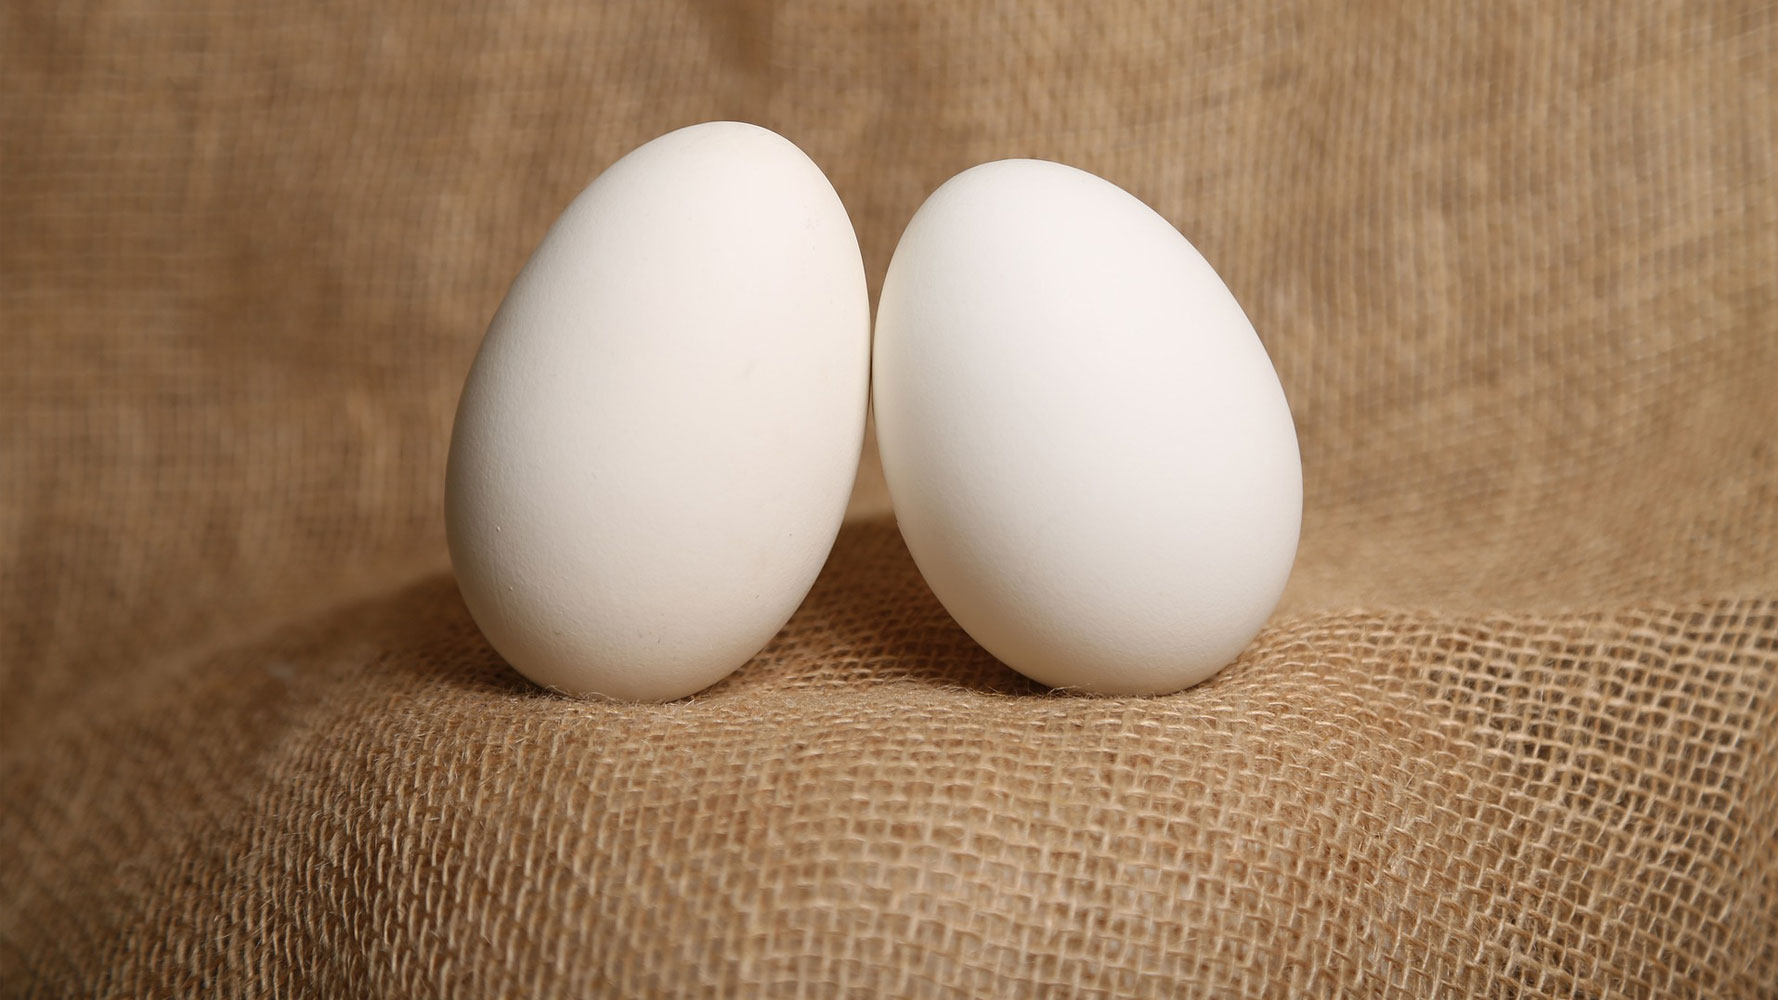 Ördek yumurtası fiyatları,Ördek yumurtası piyasası, Ördek yumurtası resmi